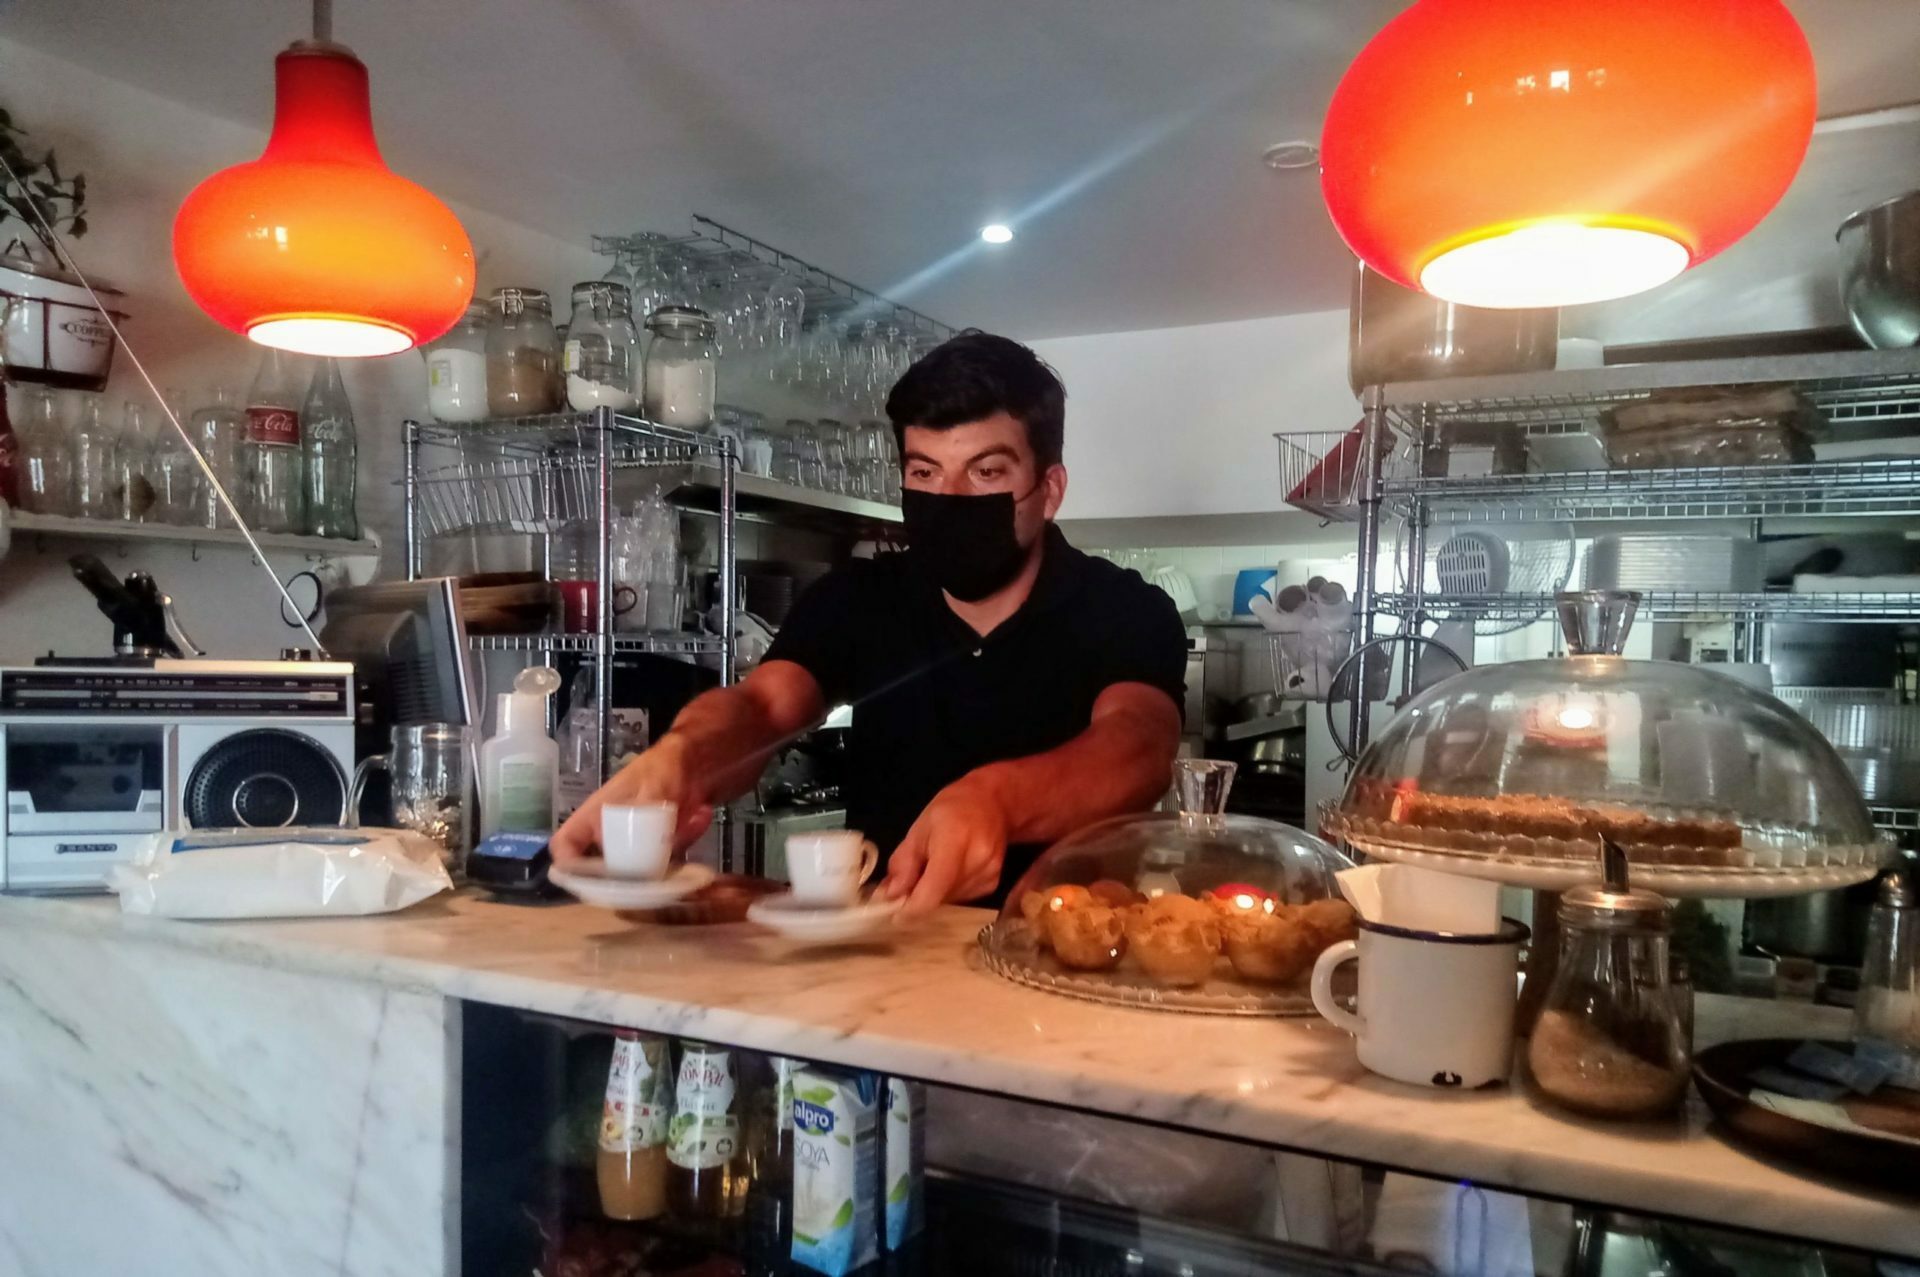 Miguel Barros serves coffee in his bar.